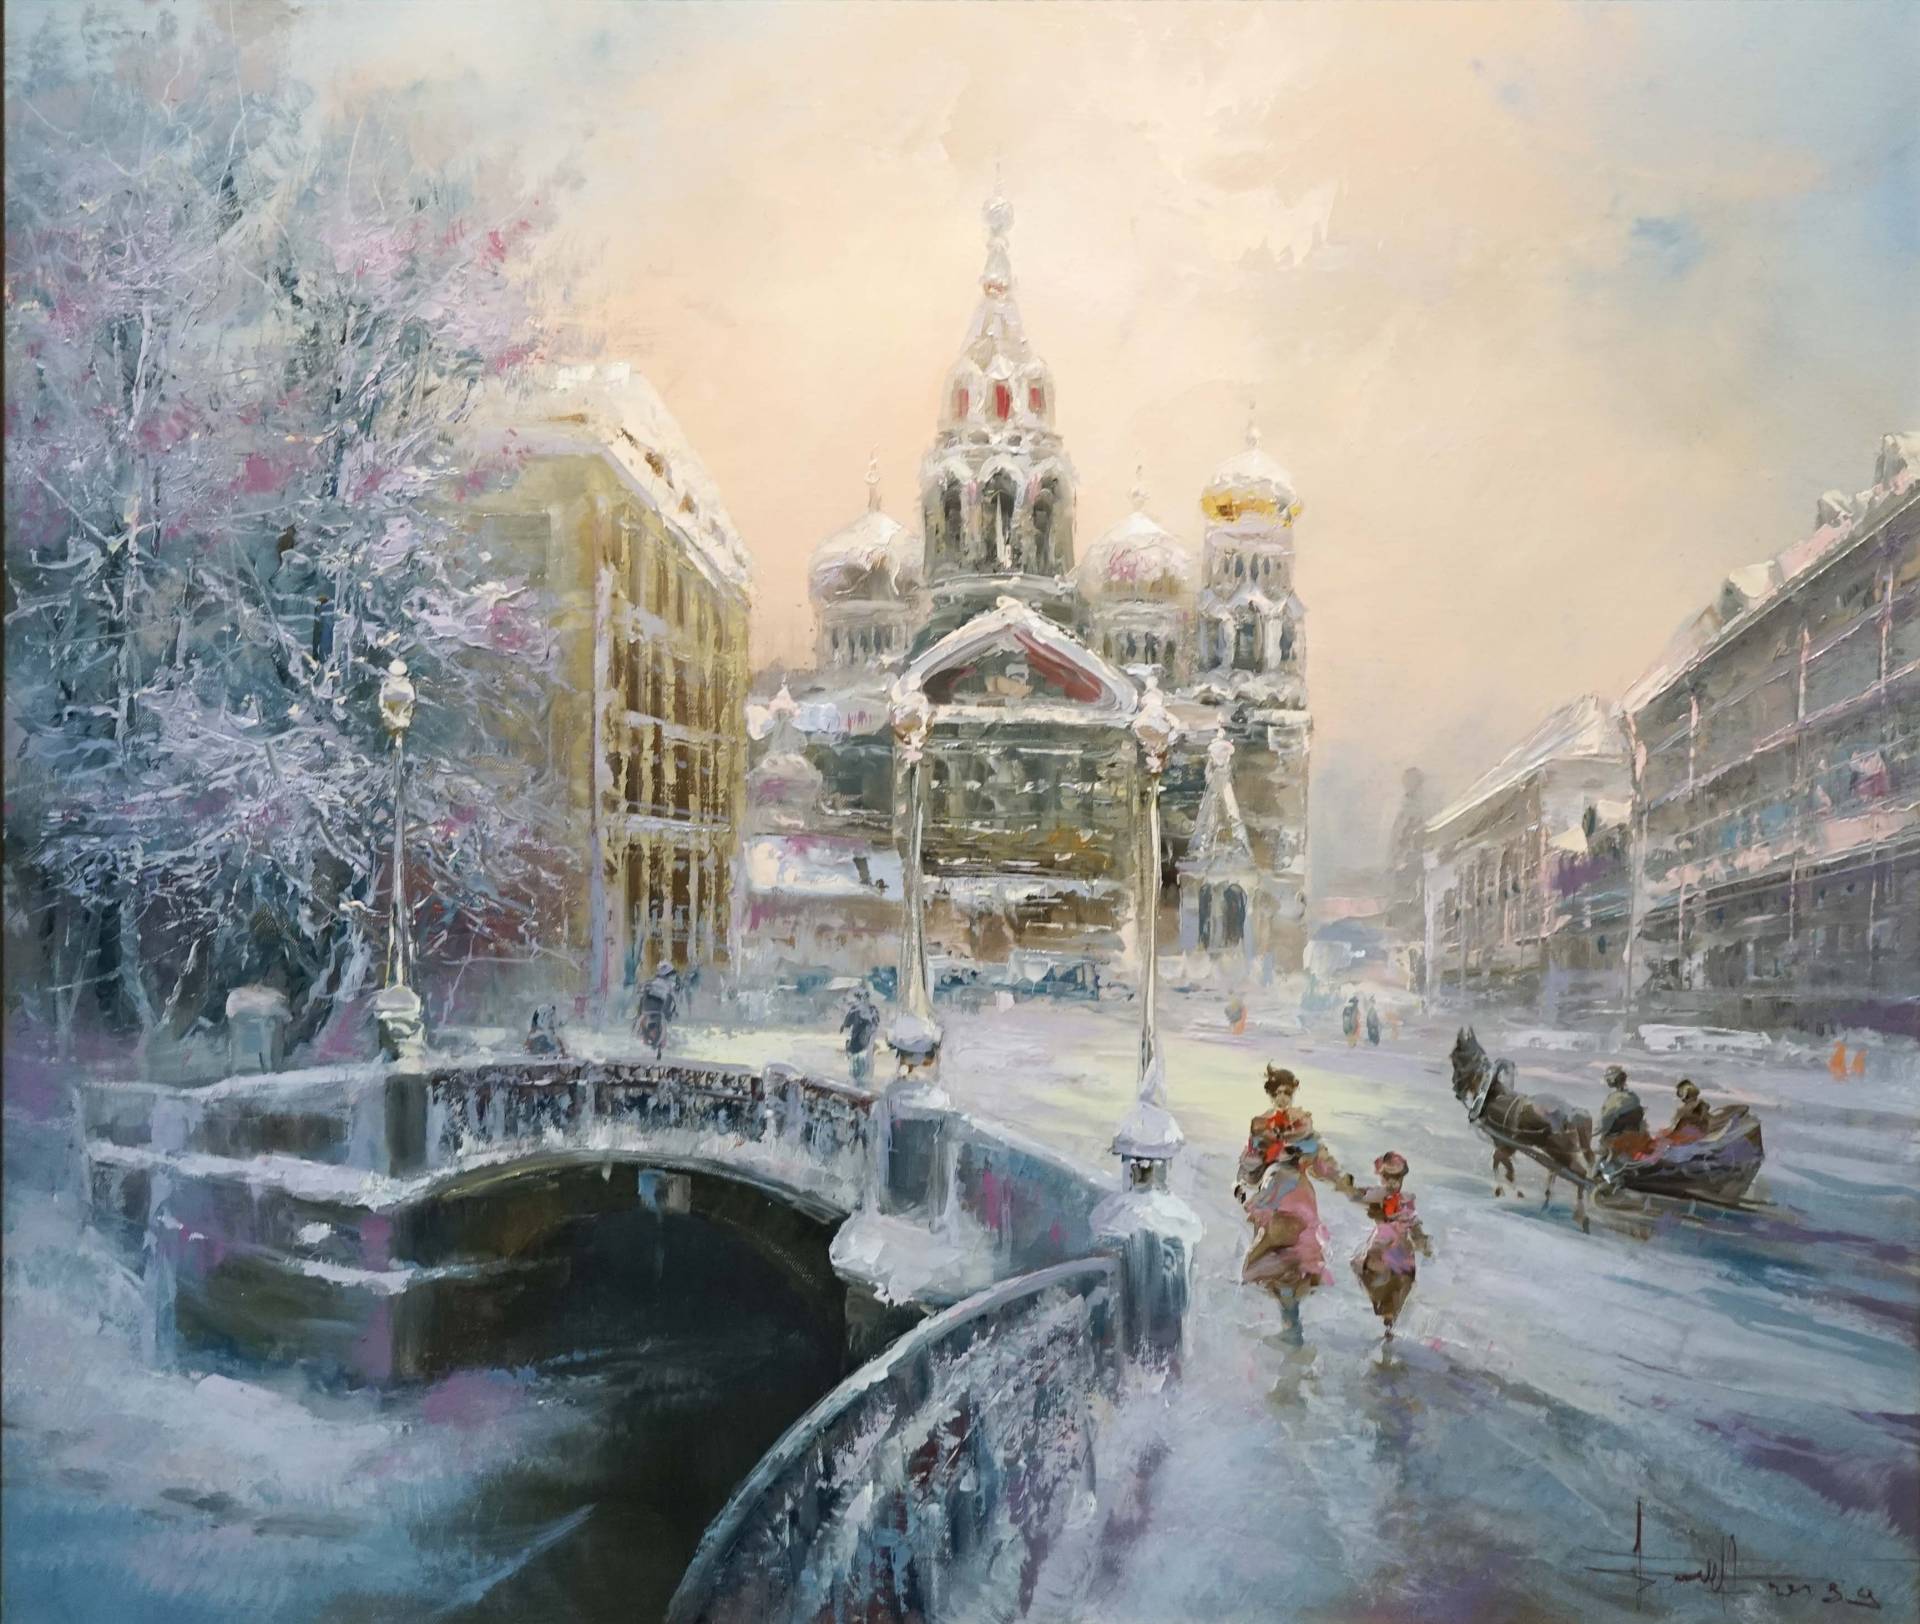 Winter in St. Petersburg - 1, Dmitry Balakhonov, Buy the painting Oil